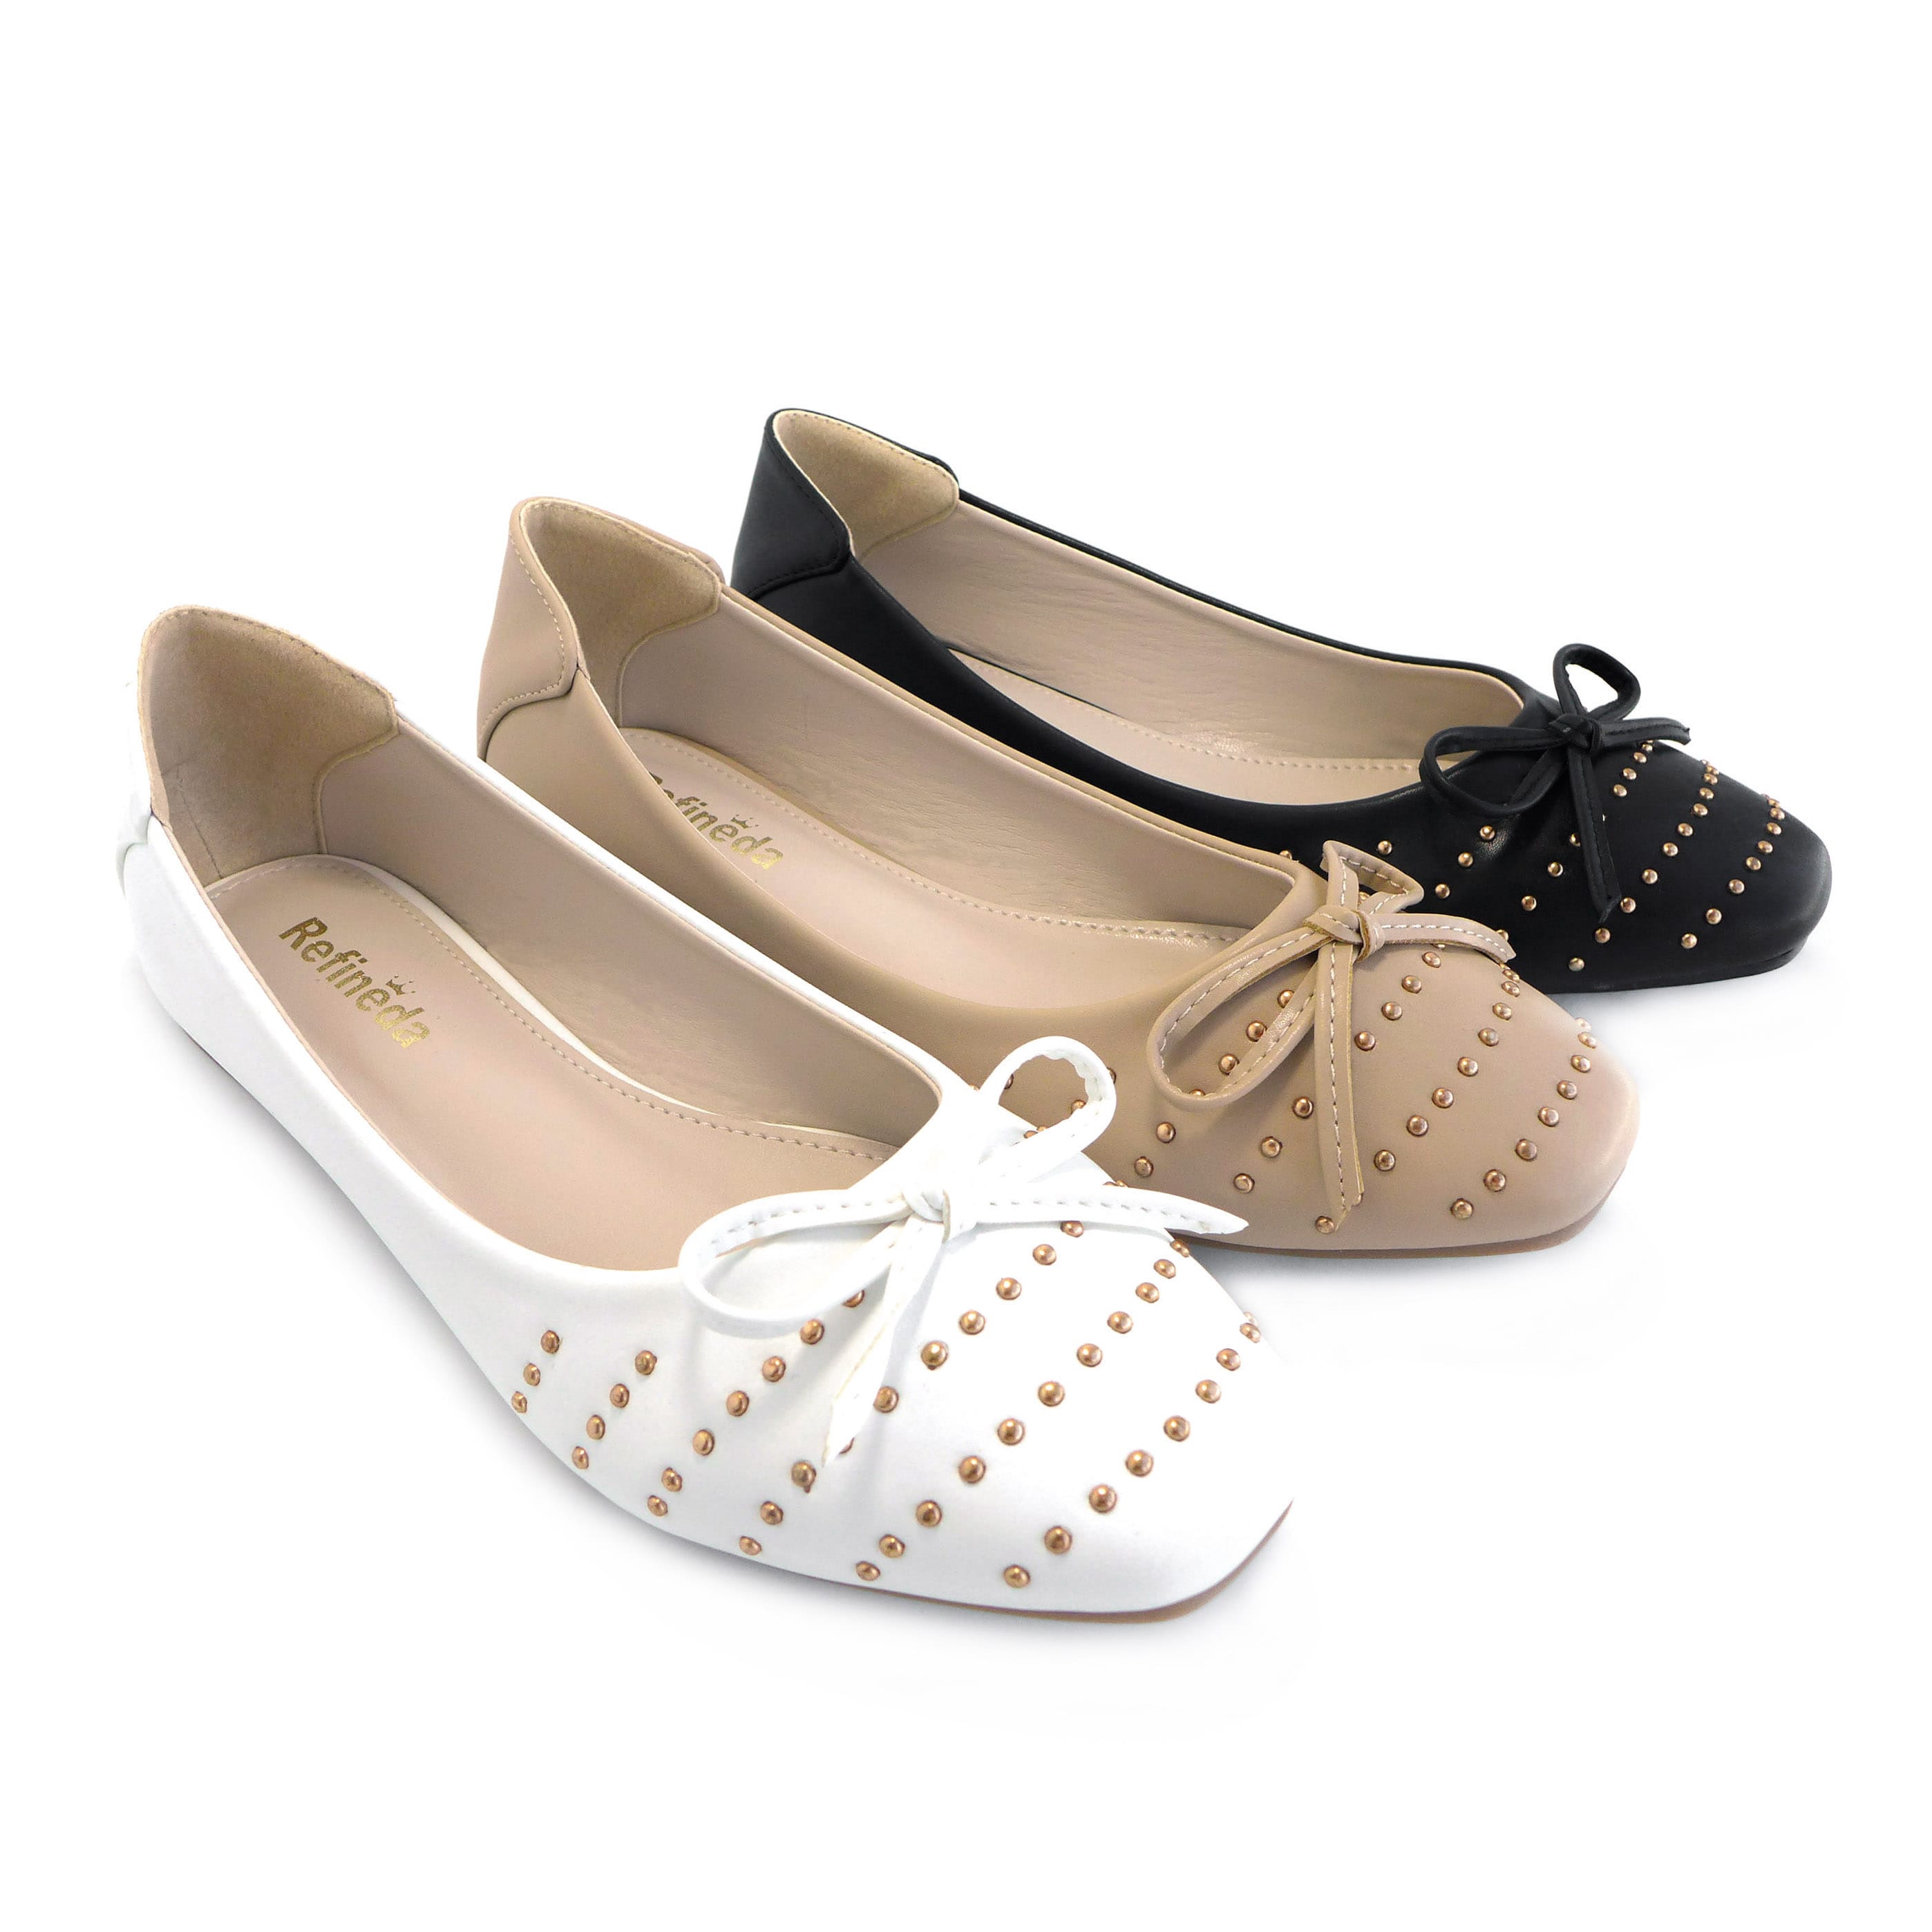 Refineda Vakadzi Chete-Simple Ballerina Kufamba Flats Shoes